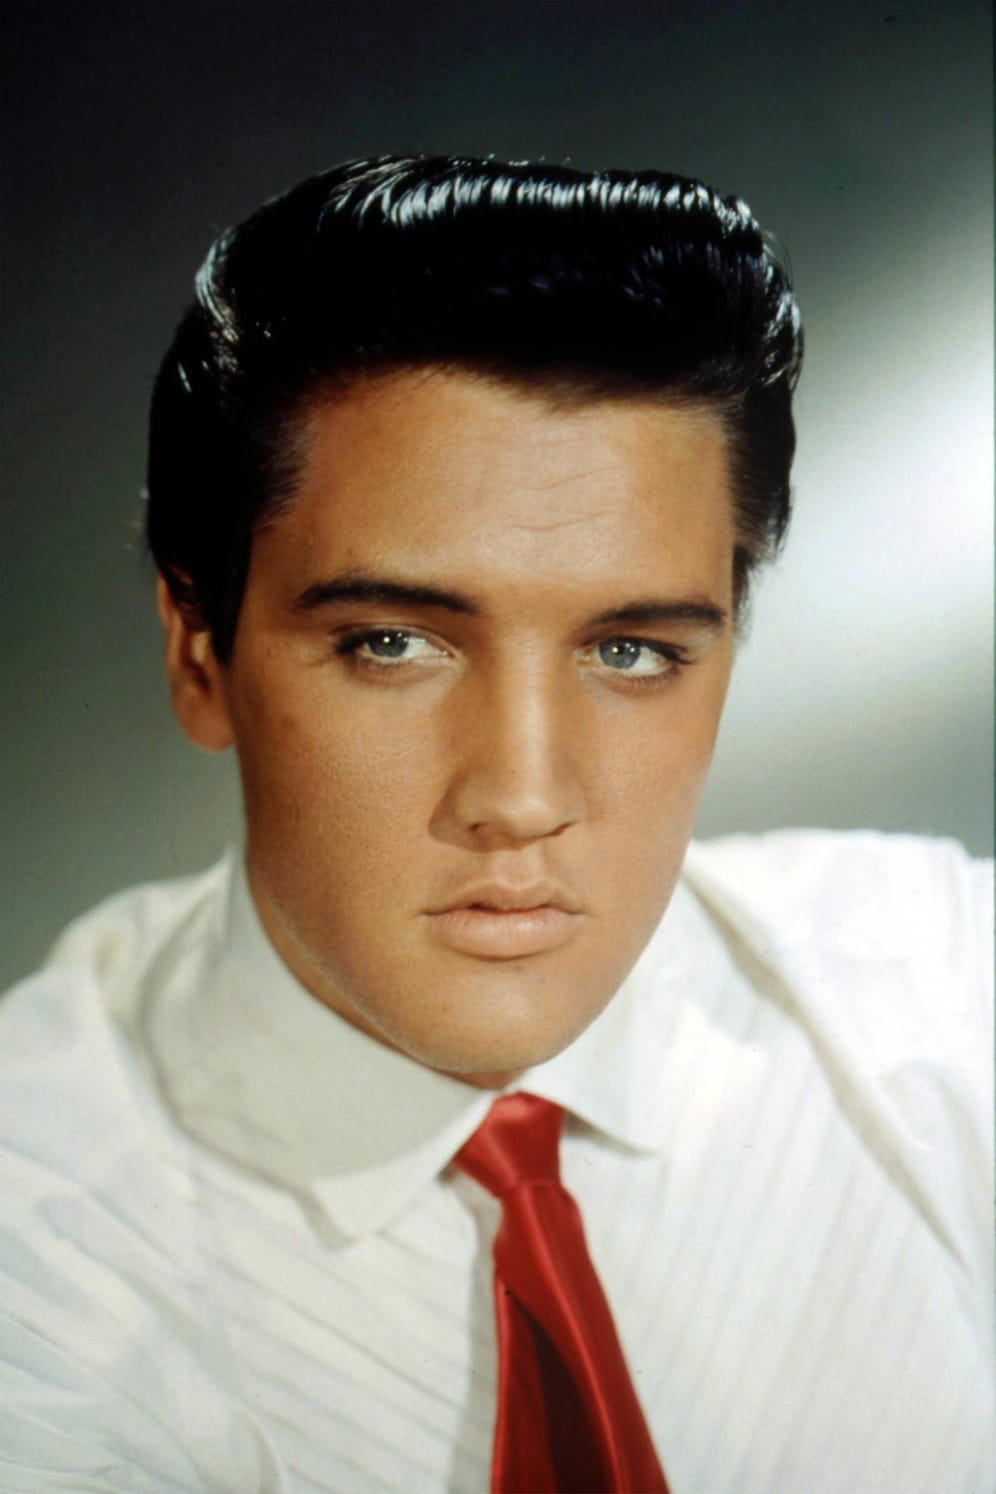 Sänger Elvis Presley: 8. Januar 1935